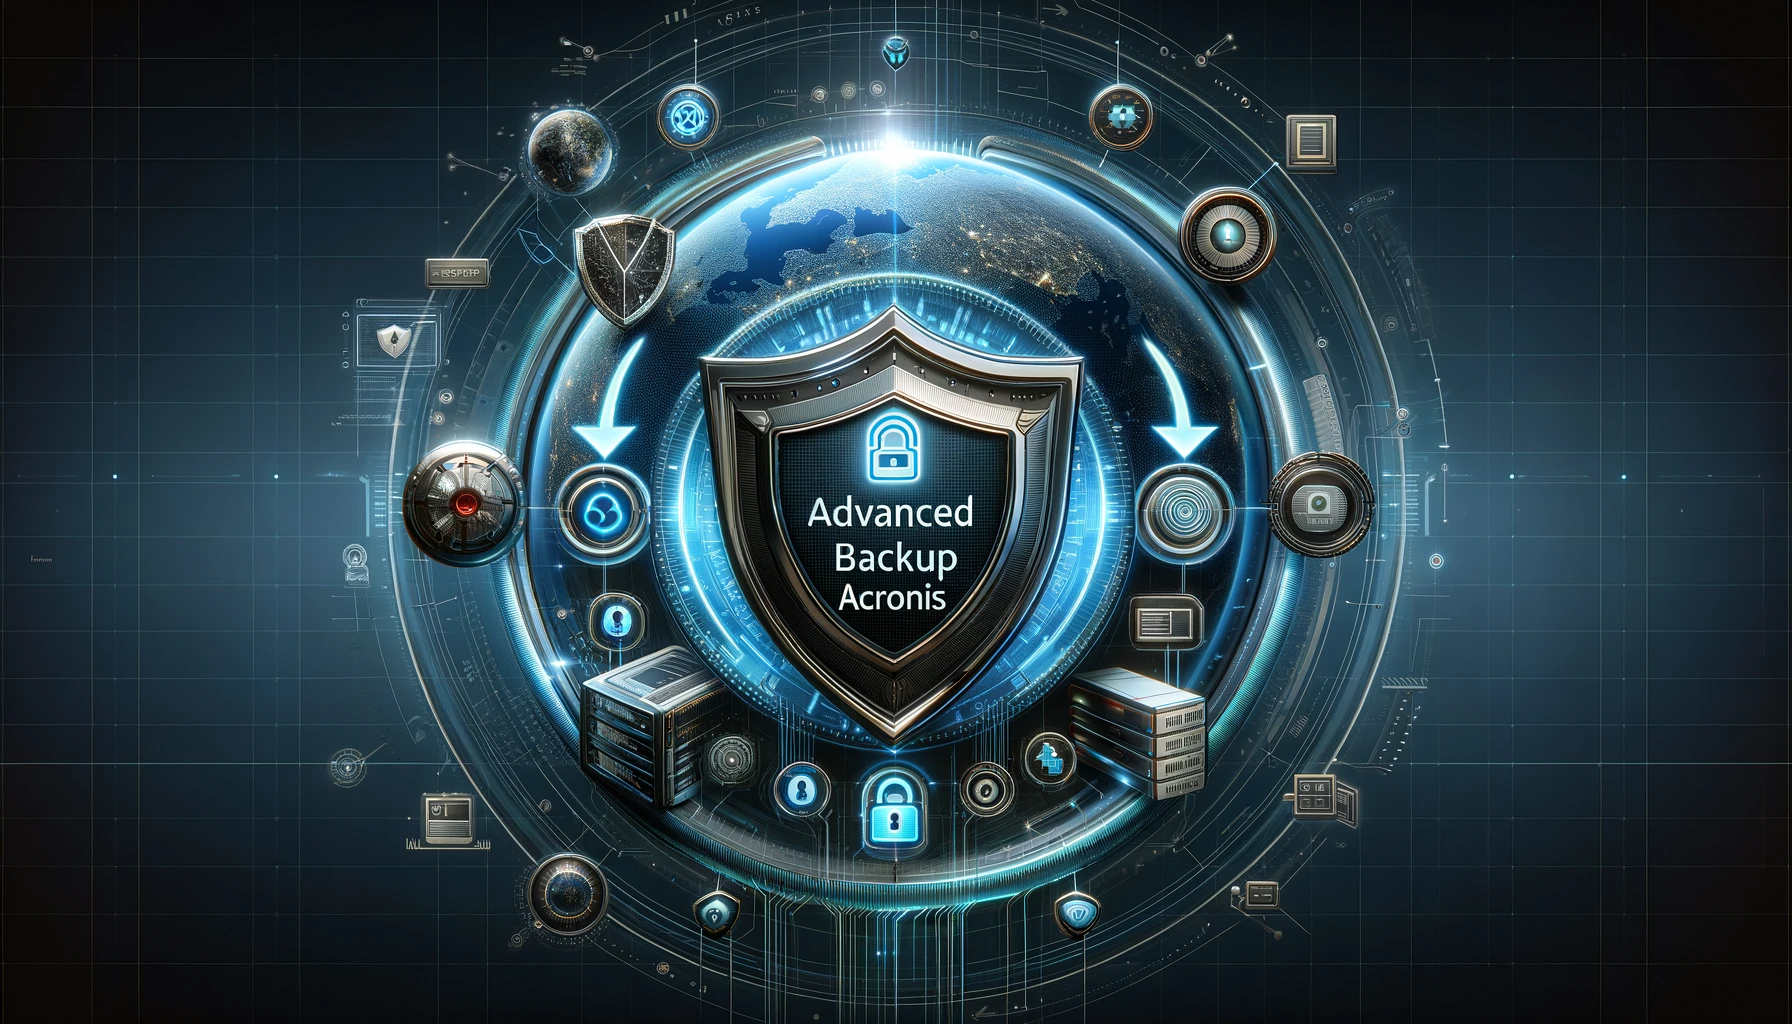 Advanced Backup Acronis Segurança e Eficiência no Digital